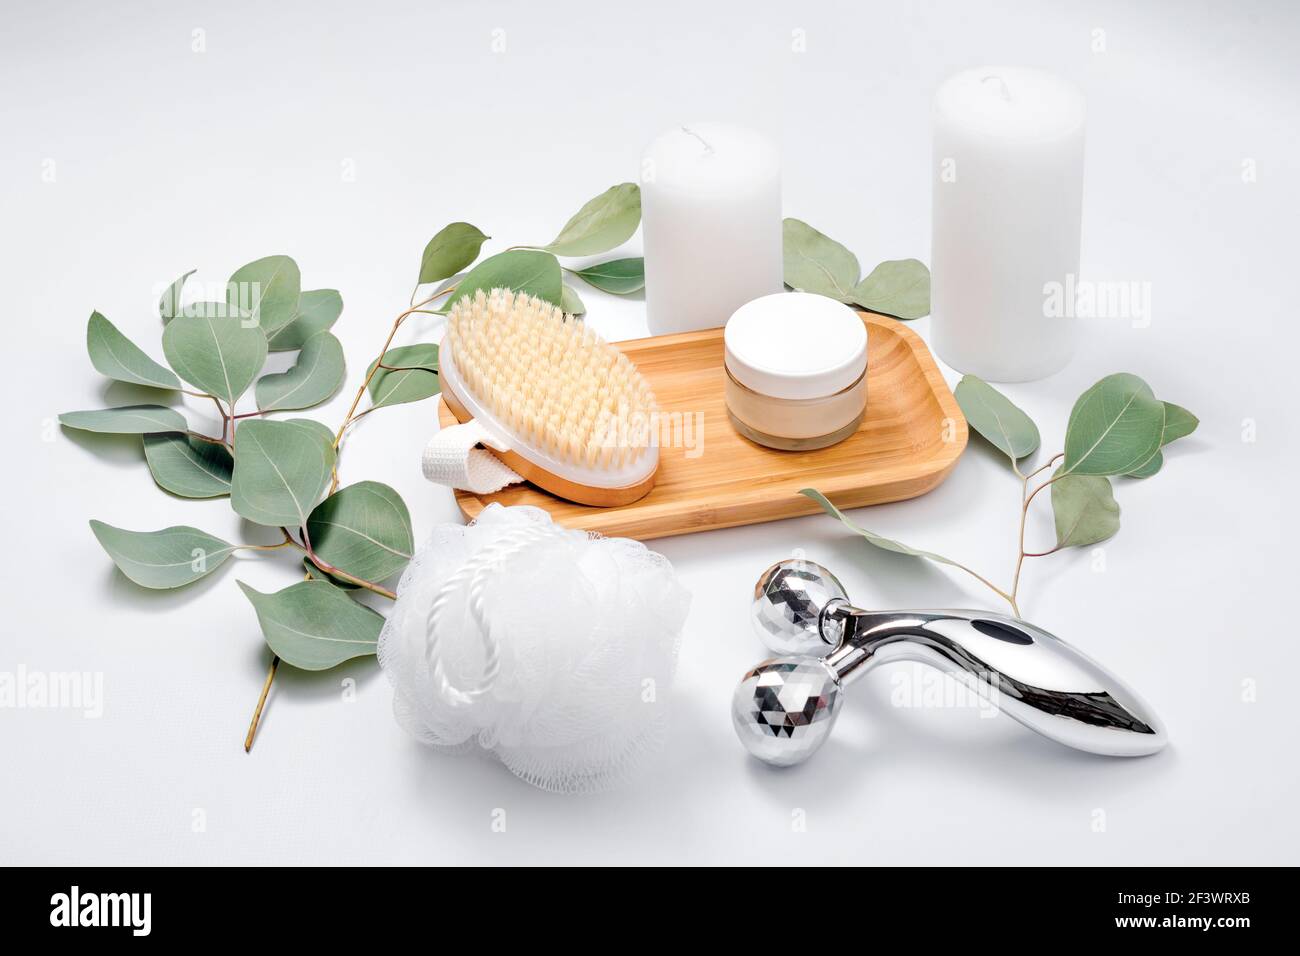 Gesichtswalze, Massagebürste, Gesichtscreme, Waschlappen und Kerzen mit natürlichen  Eukalyptusblättern auf hellem Hintergrund. Beauty-Produkte, Massage-Werkzeuge,  fa Stockfotografie - Alamy